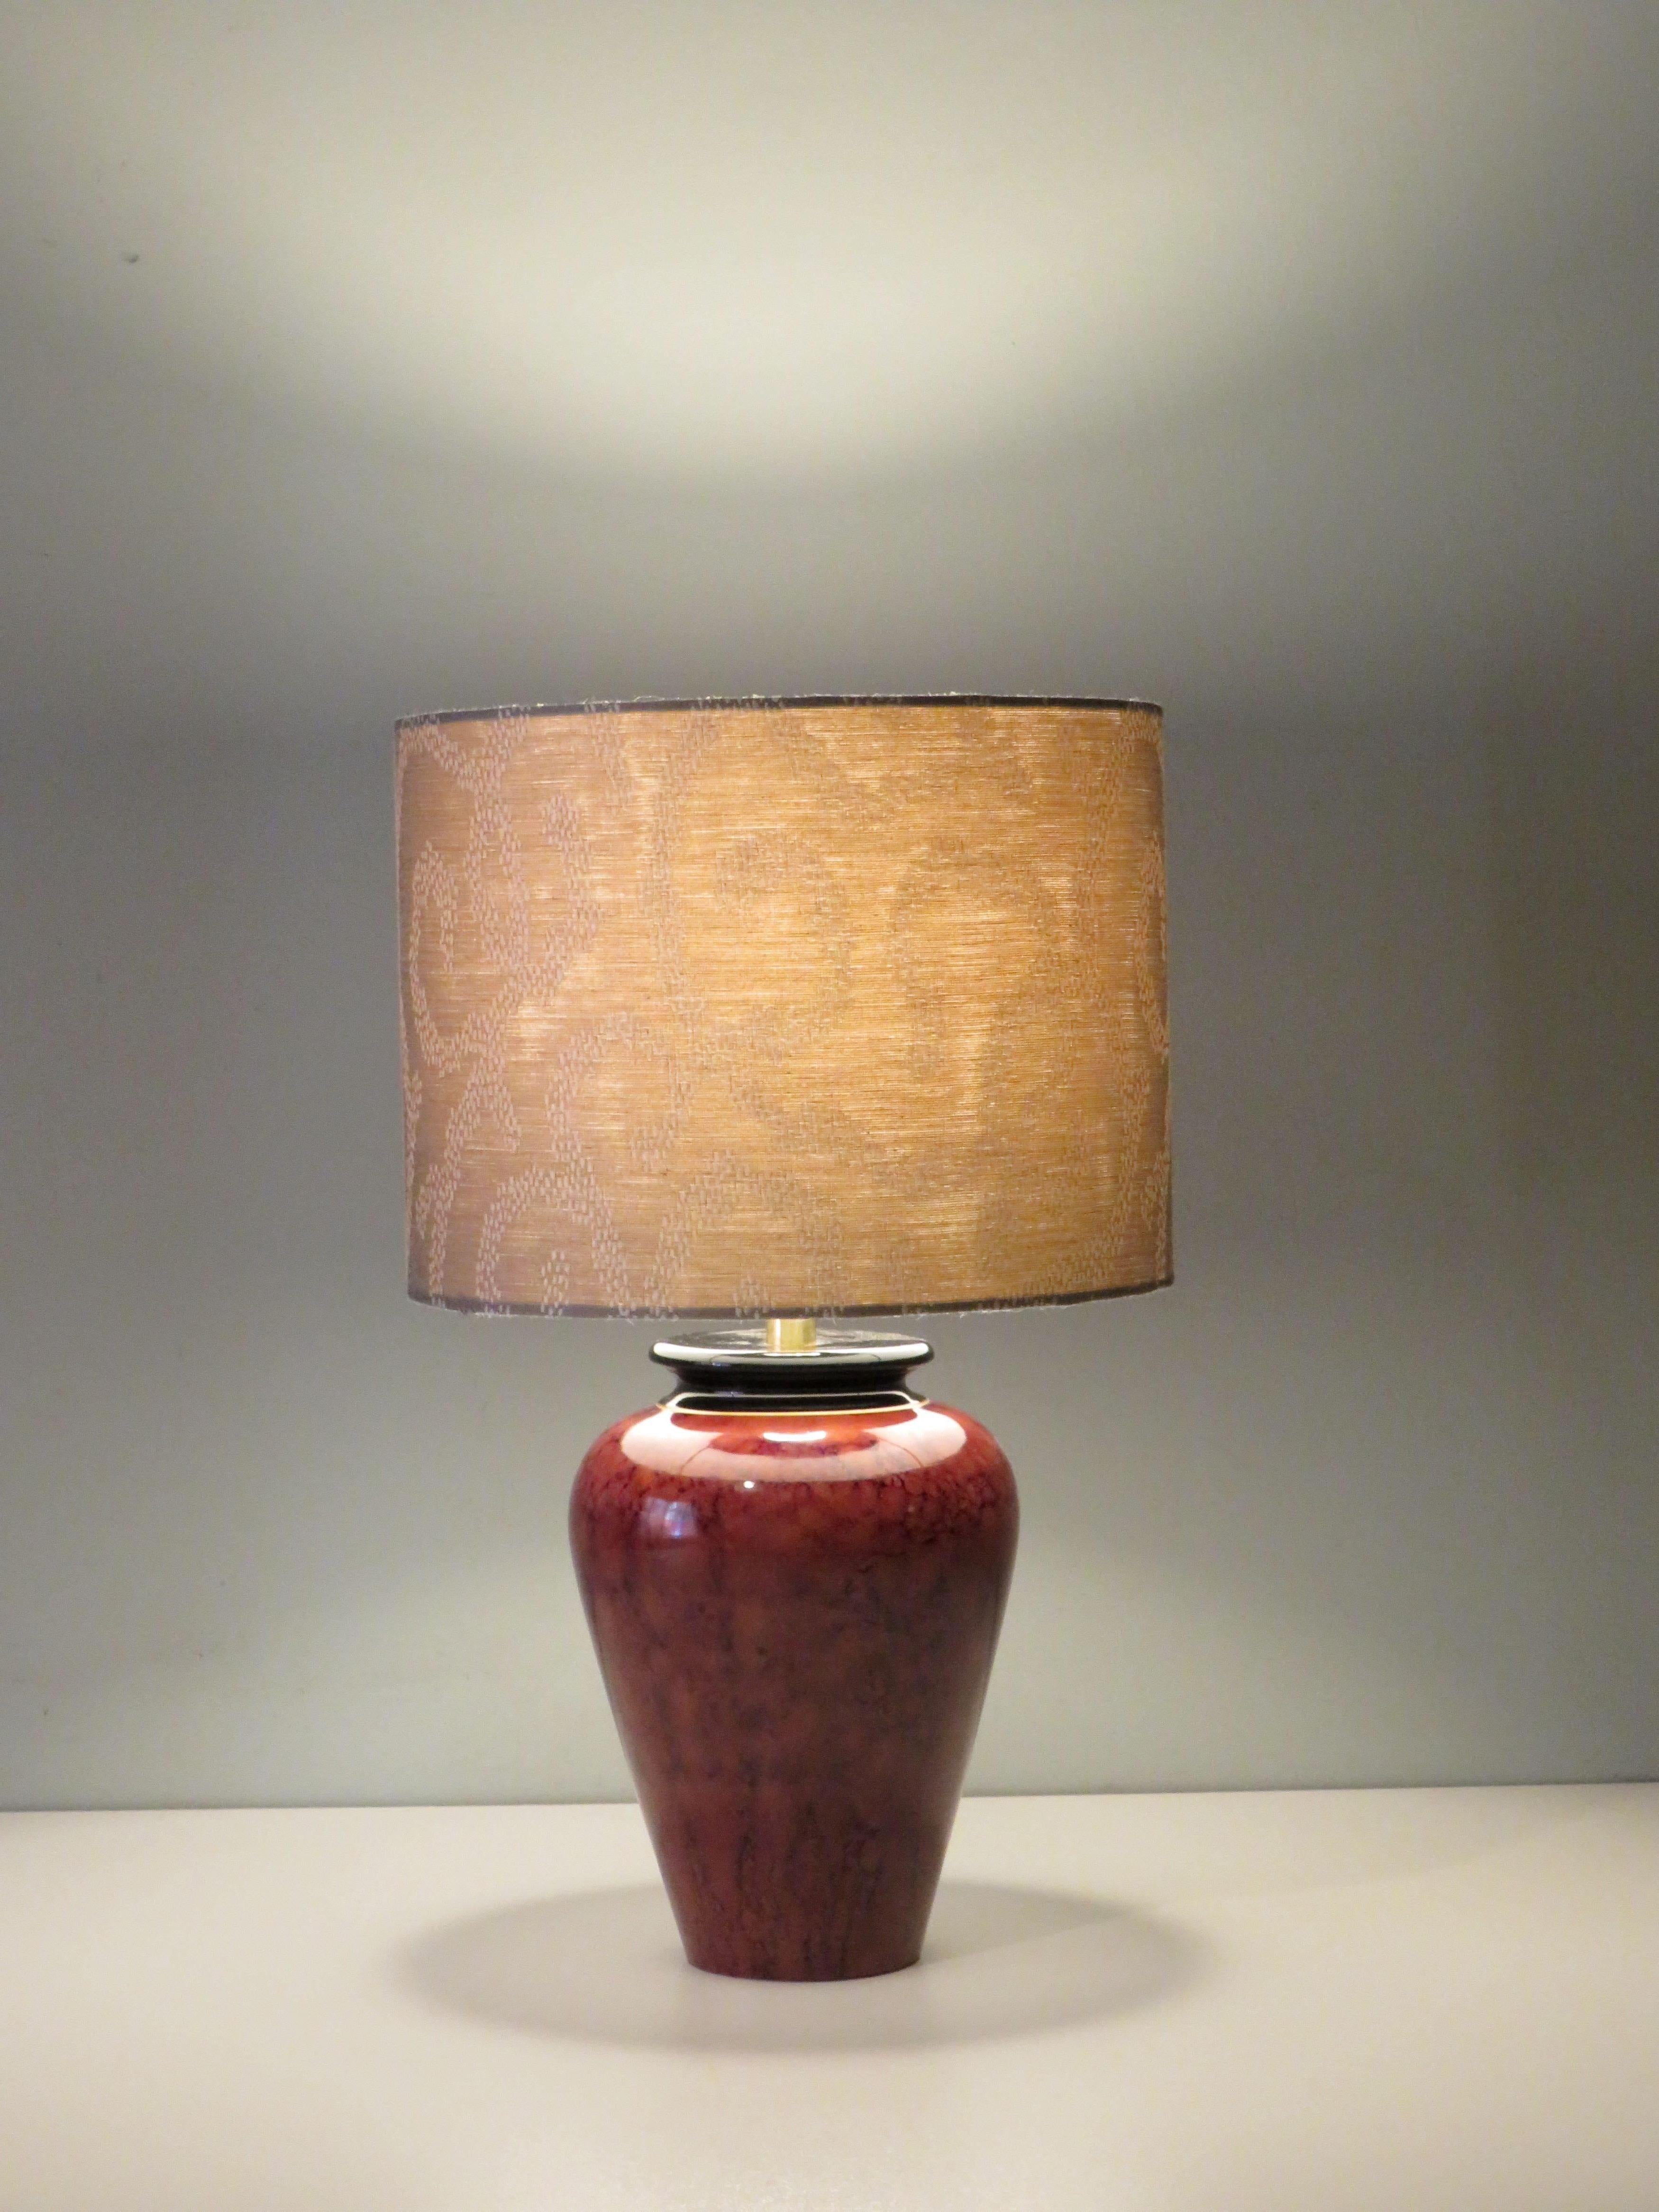 Vintage-Lampenfuß, signiert Louis Drimmer, mit maßgeschneidertem Lampenschirm aus sandfarbenem Jacquard-Stoff.
Die Tischlampe hat eine goldfarbene Schnur, einen Ein- und Ausschaltknopf und einen Stecker. Es gibt eine E 27-Armatur und die Tischlampe